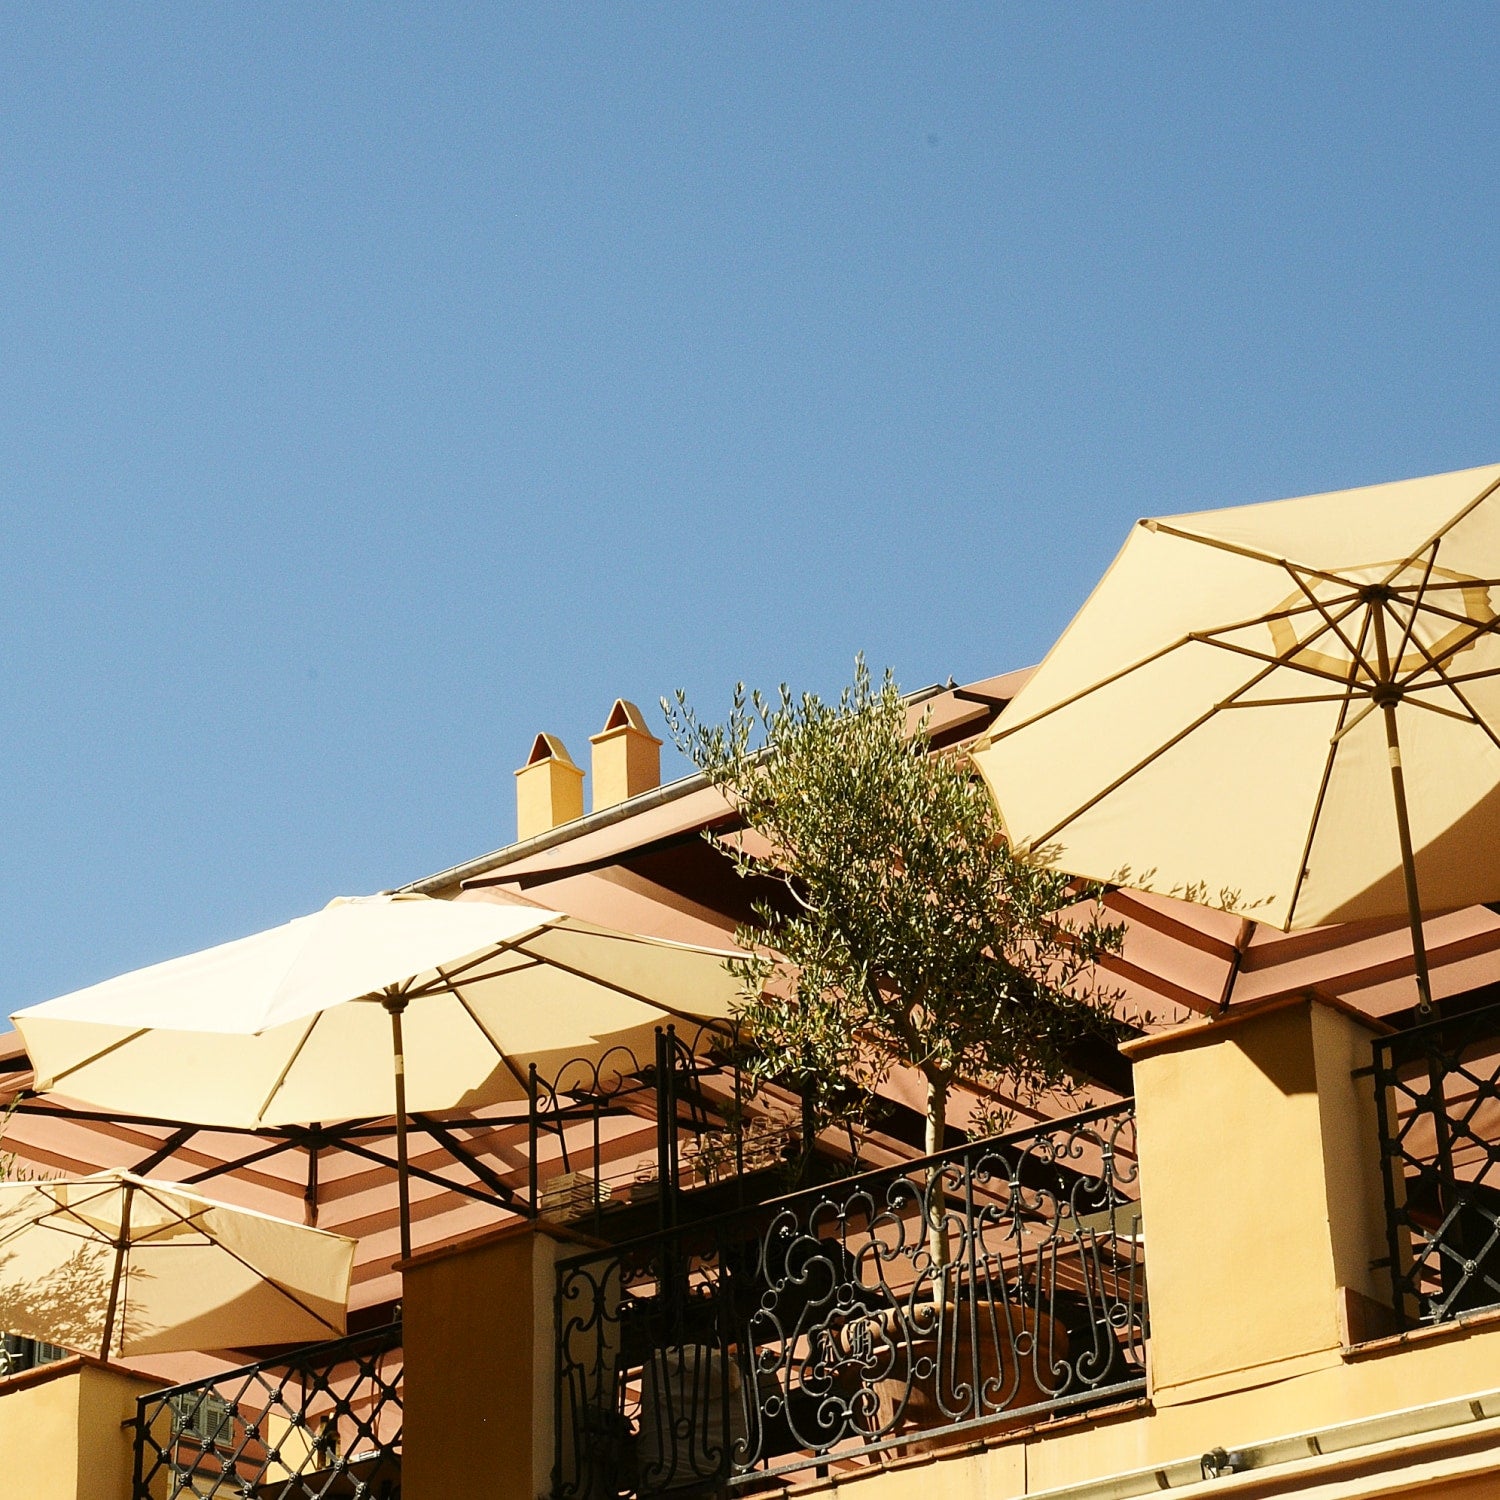 Toskanische Terrasse mit drei gelben Sonnenschirmen, verschnörkeltem Metallgeländer, Olivenbäumen und blauem, wolkenlosem Himmel